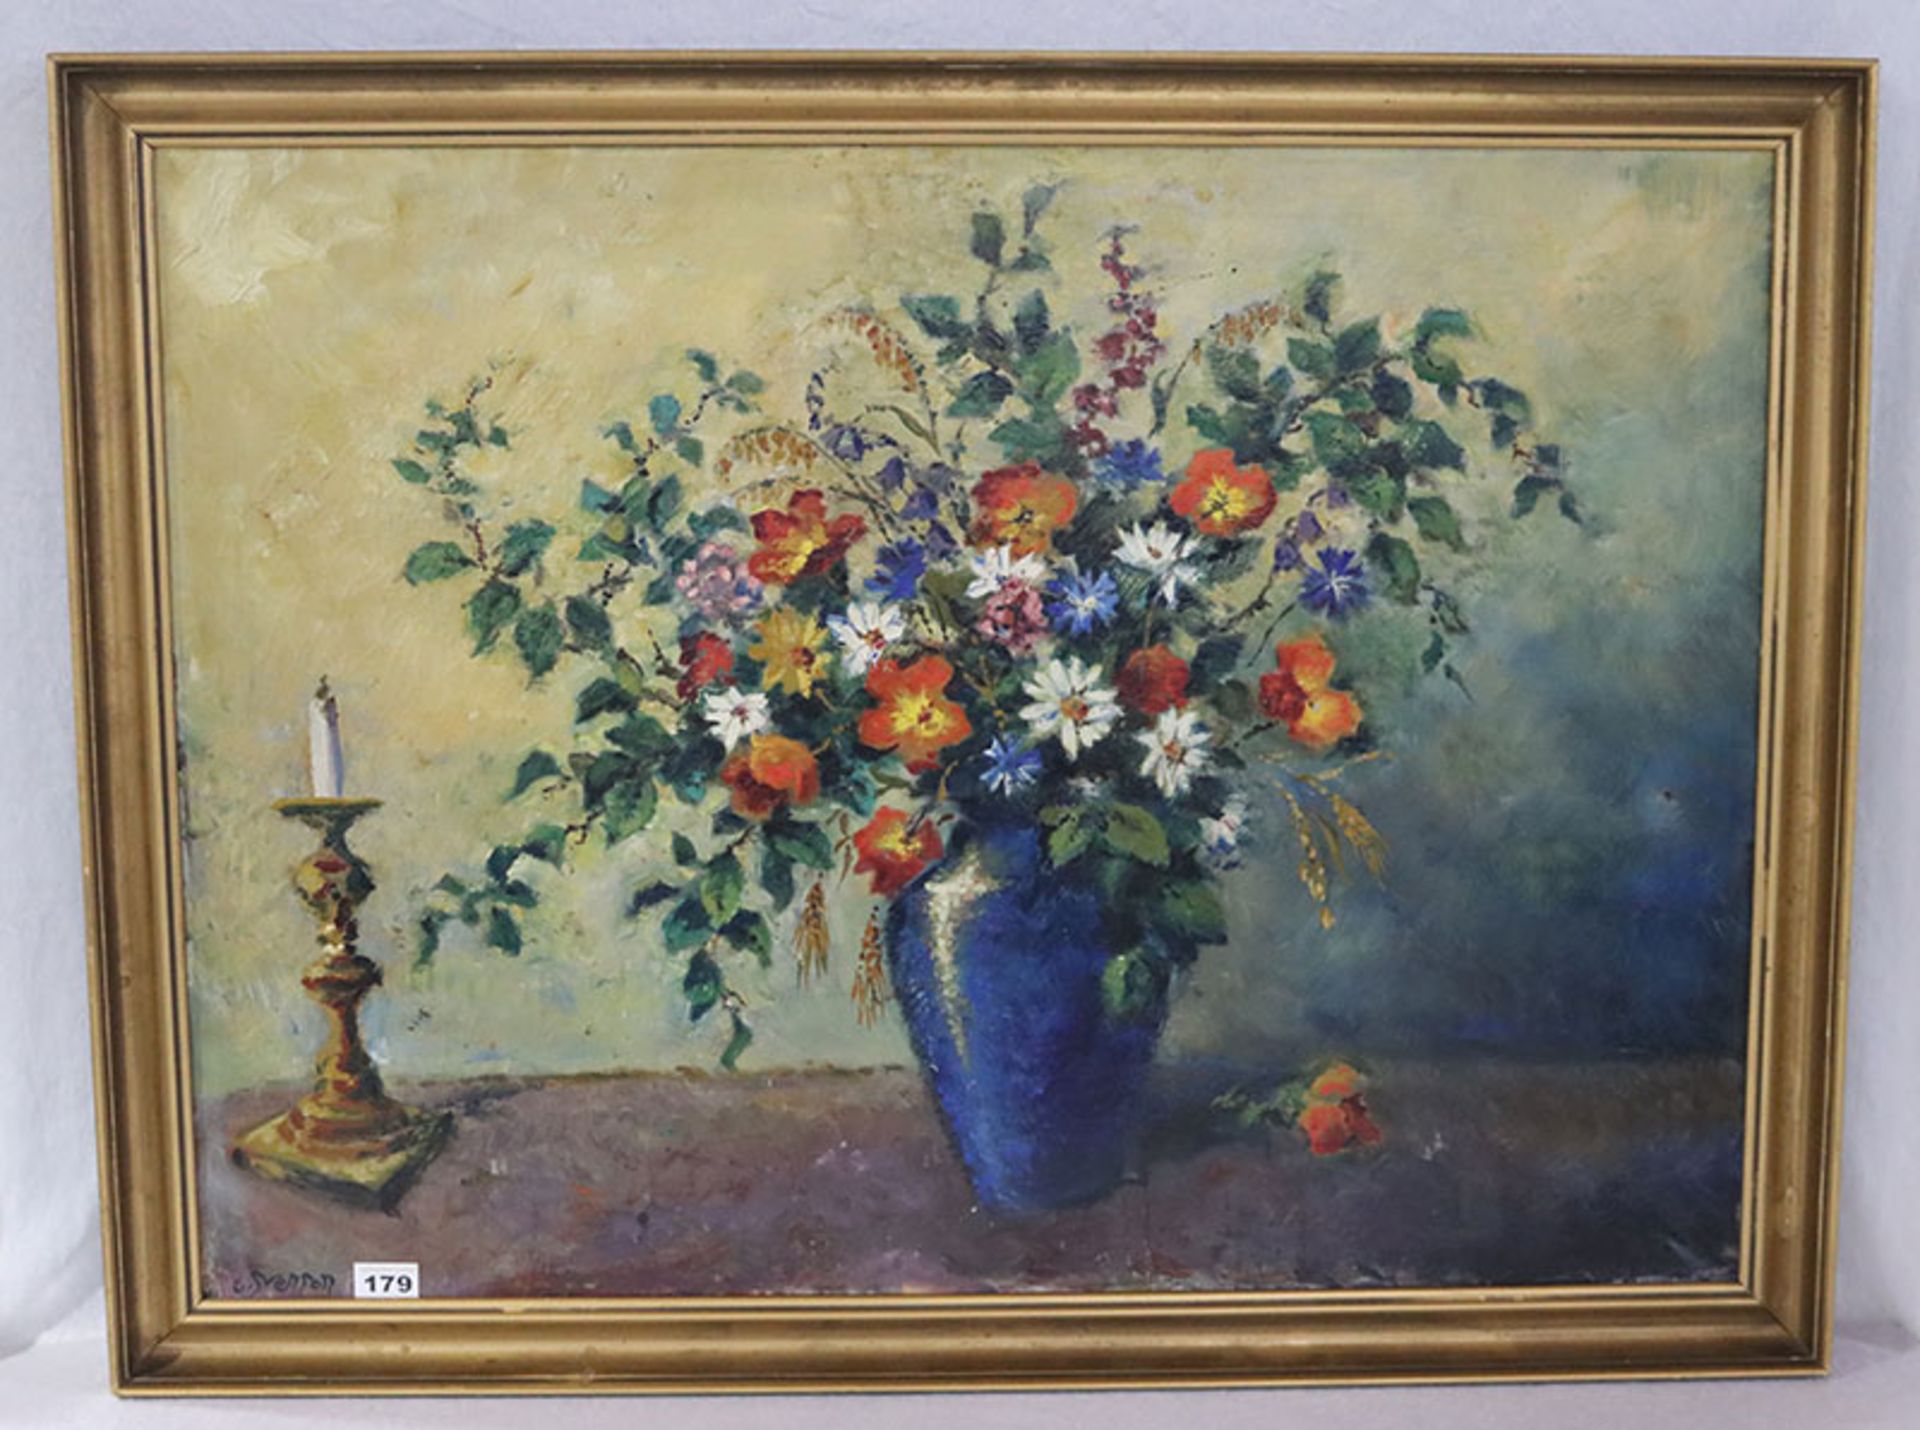 Gemälde ÖL/LW 'Blumenstrauß in Vase', undeutlich signiert Merson ?, gerahmt, Rahmen bestossen und